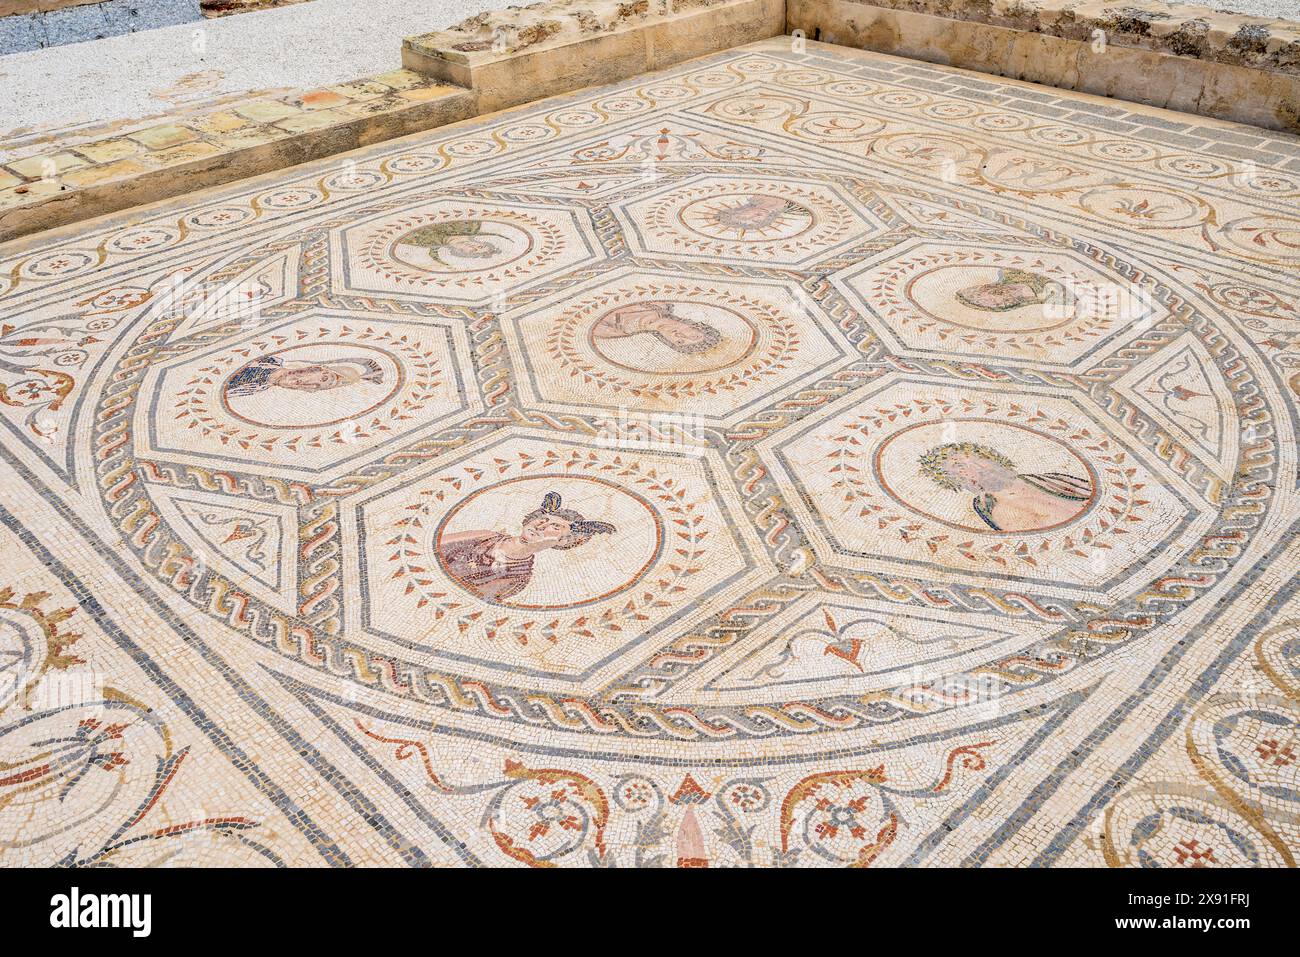 Italica, maison planétarium, ancienne ville romaine, 206 av. J.-C., Andalousie, Espagne Banque D'Images